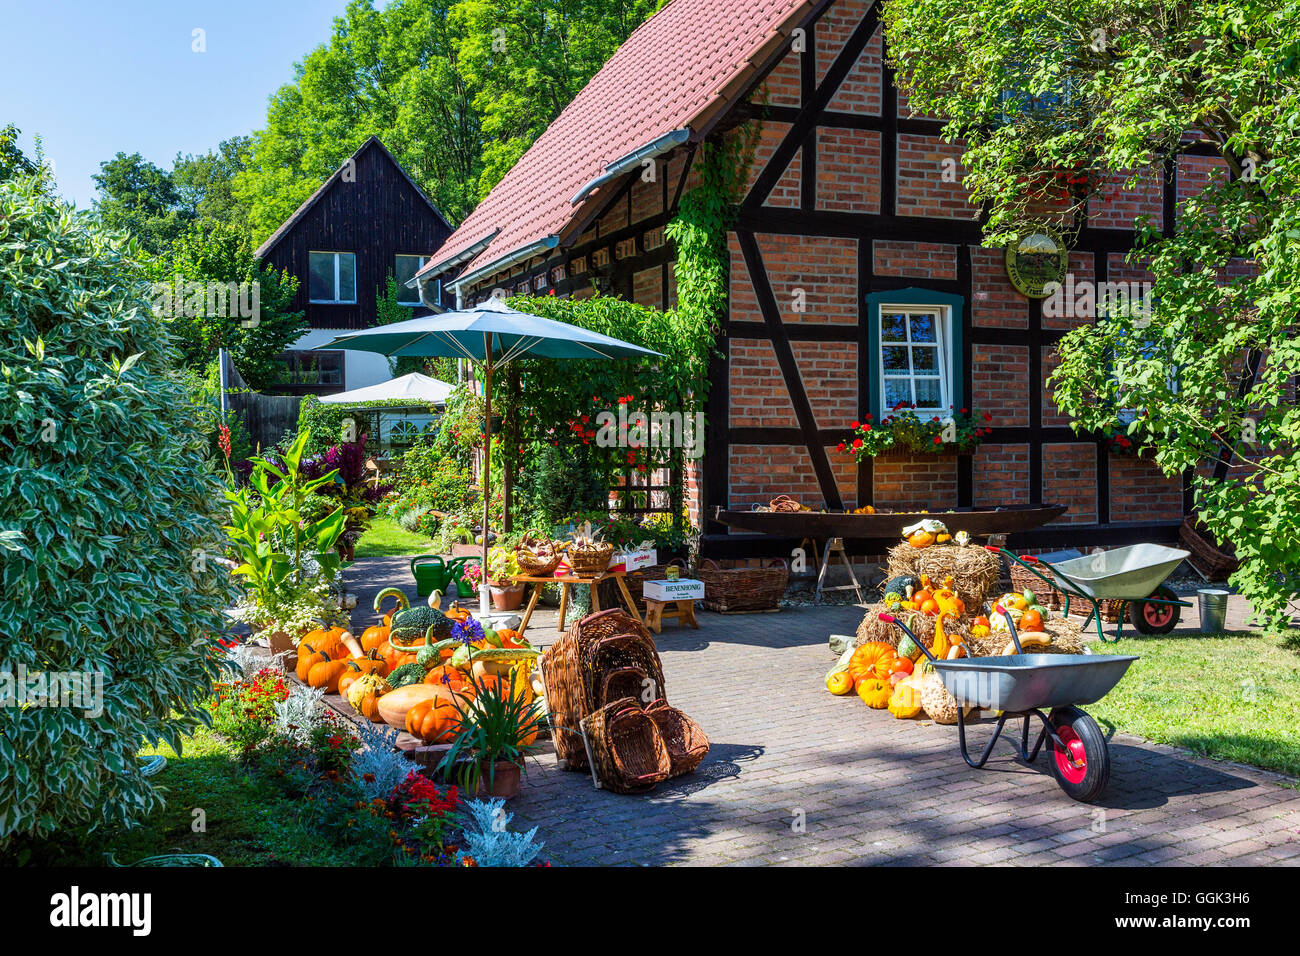 Casa colonica con giardino in Lehde, zucca raccolta, Lehde, Spreewald, riserva della biosfera dall'UNESCO, Brandeburgo, Germania, Europa Foto Stock